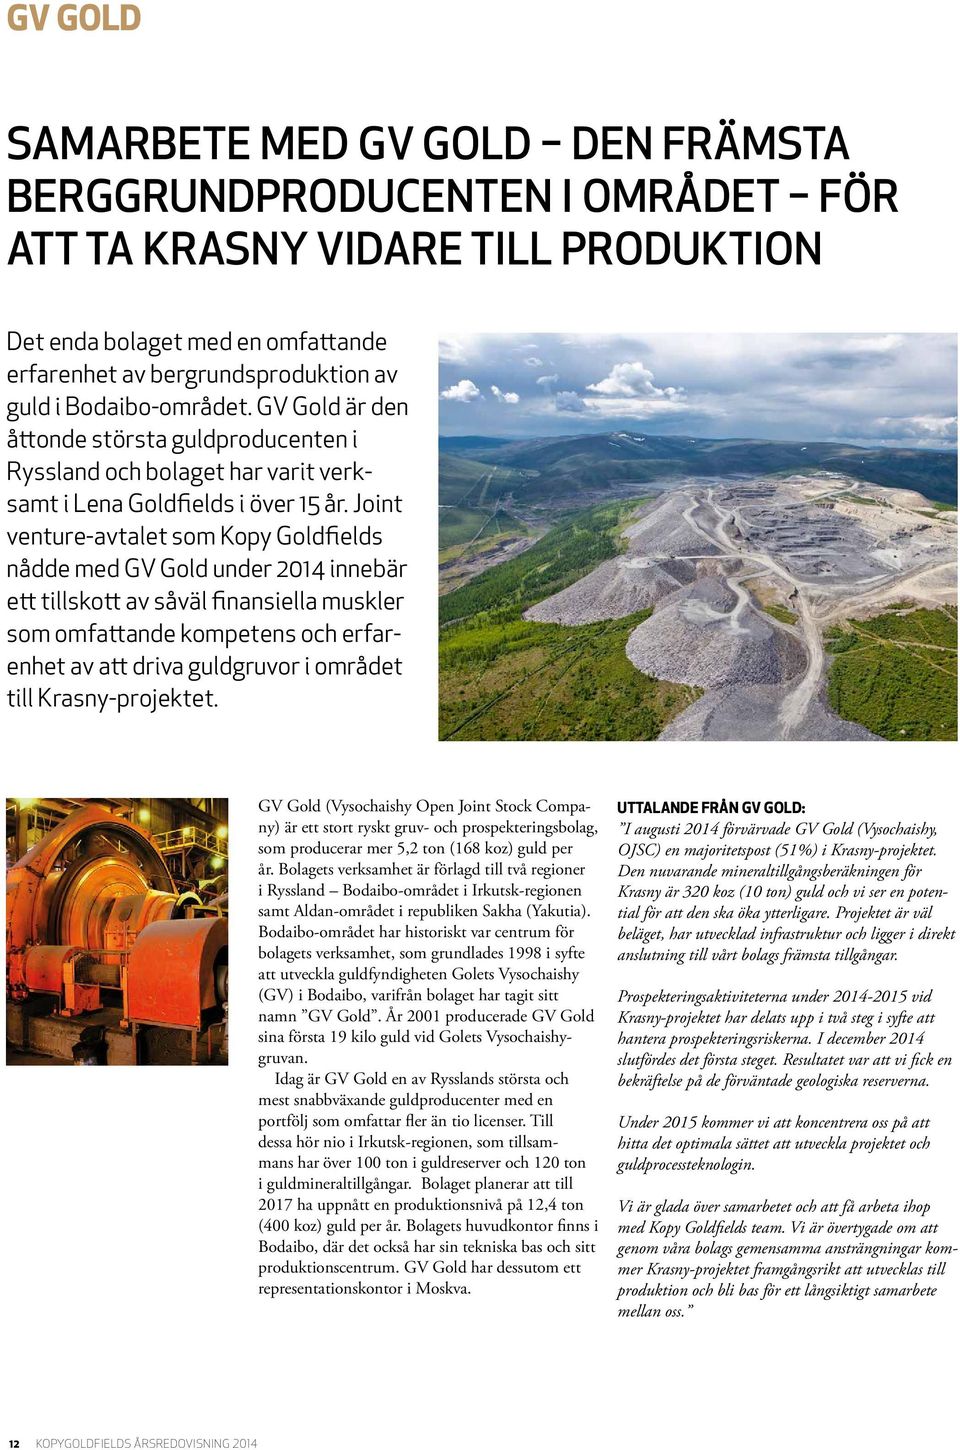 Joint venture-avtalet som Kopy Goldfields nådde med GV Gold under 2014 innebär ett tillskott av såväl finansiella muskler som omfattande kompetens och erfarenhet av att driva guldgruvor i området